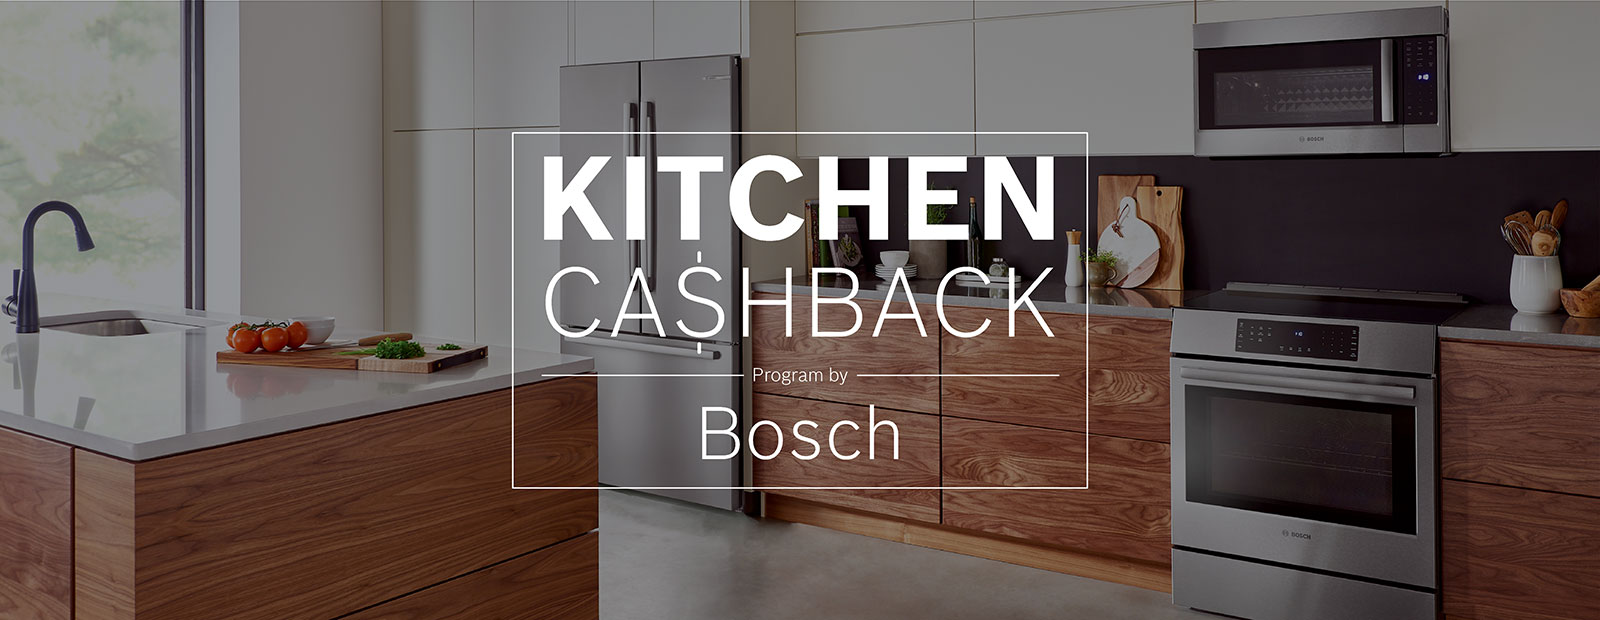 kitchen cashback program by bosch